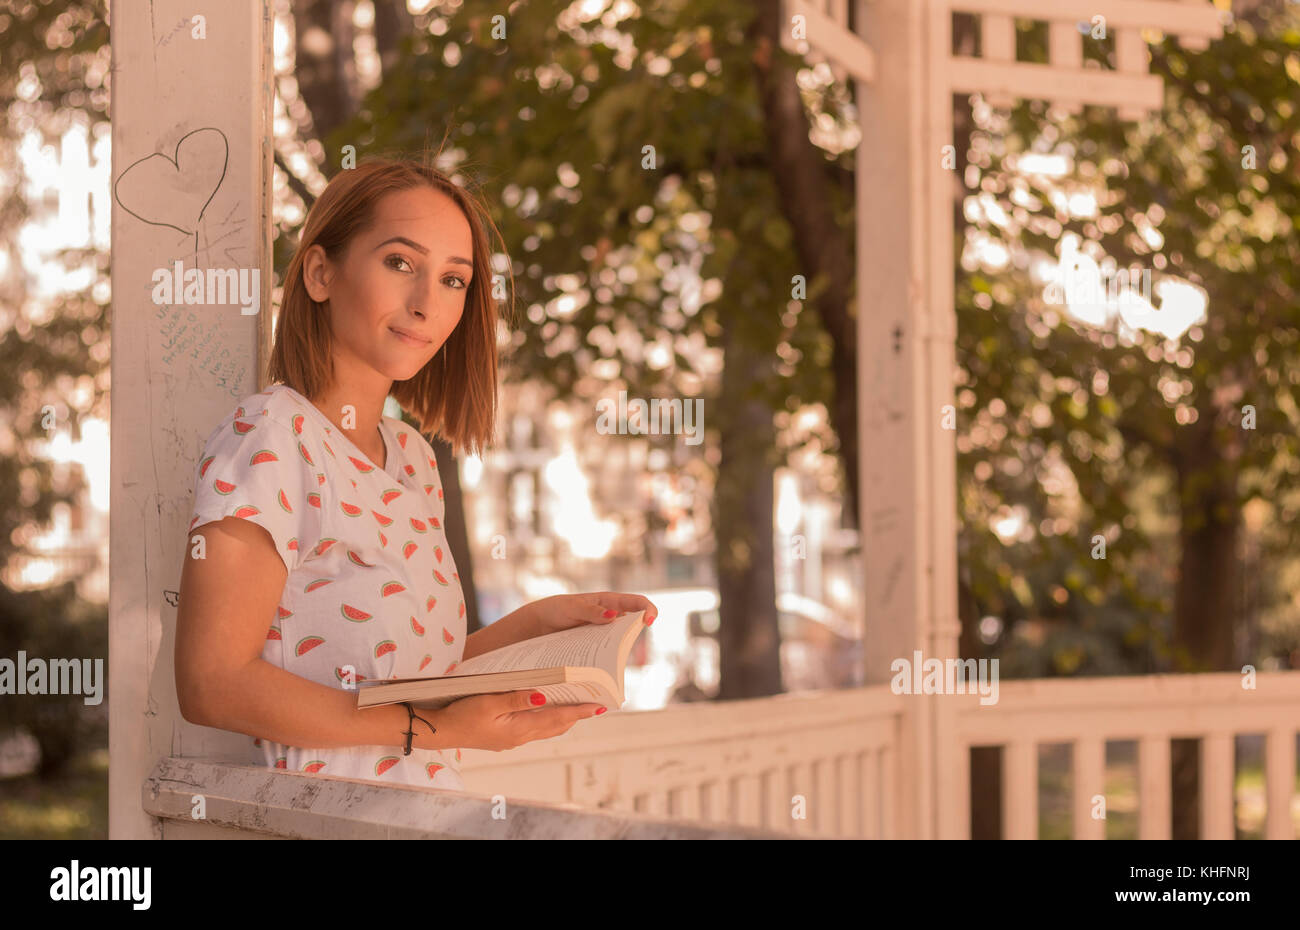 Une jeune femme lisant un livre, à l'extérieur portrait, looking at camera, journée ensoleillée Banque D'Images